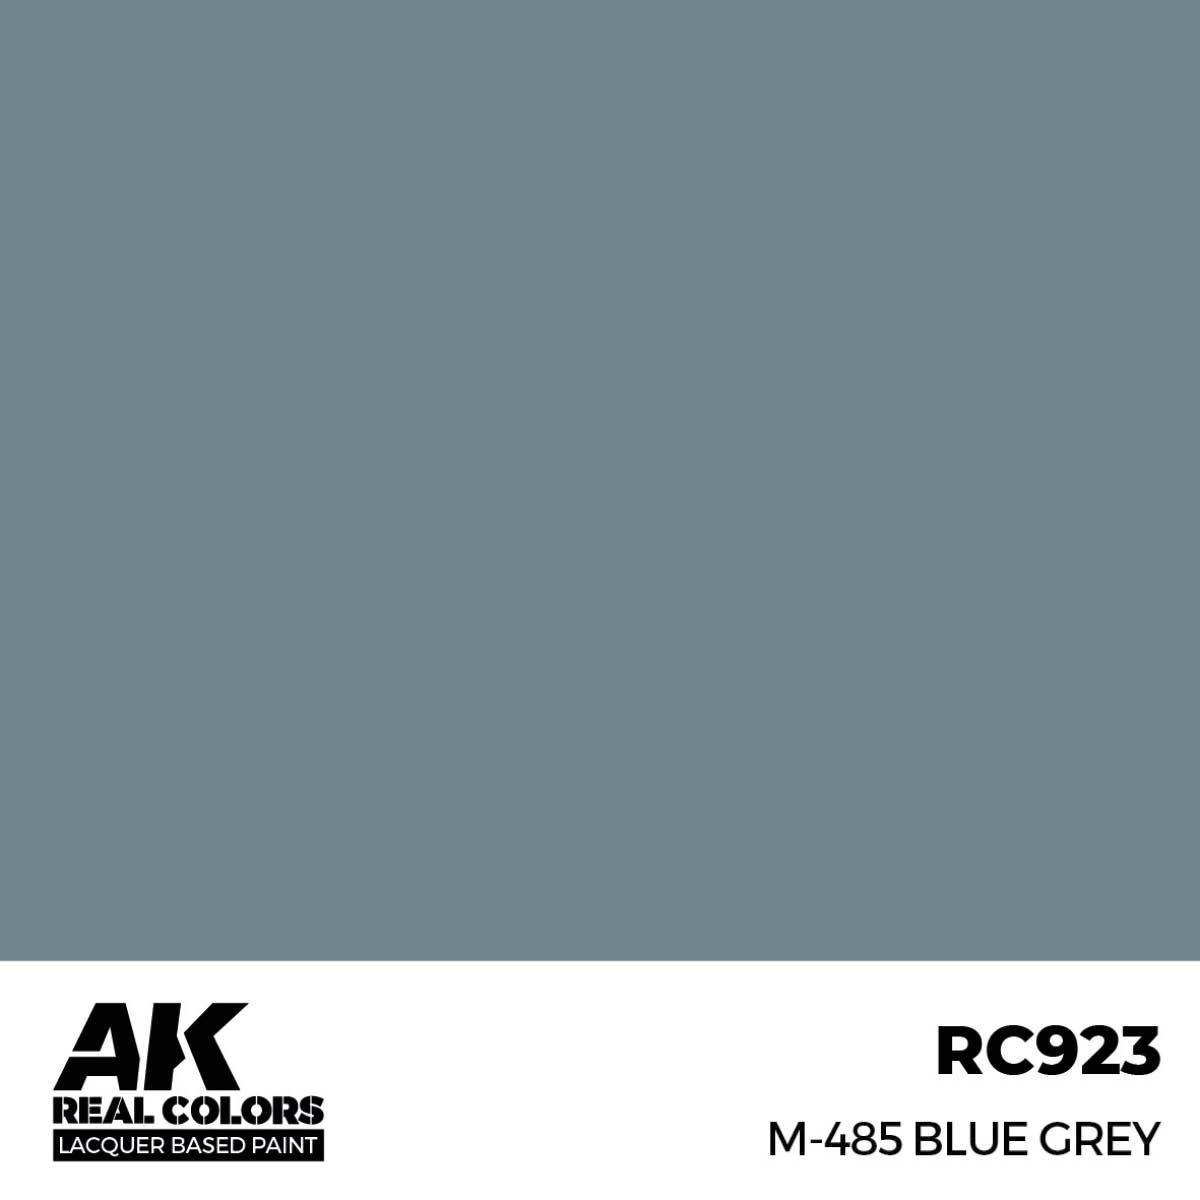 M-485 Blue Grey